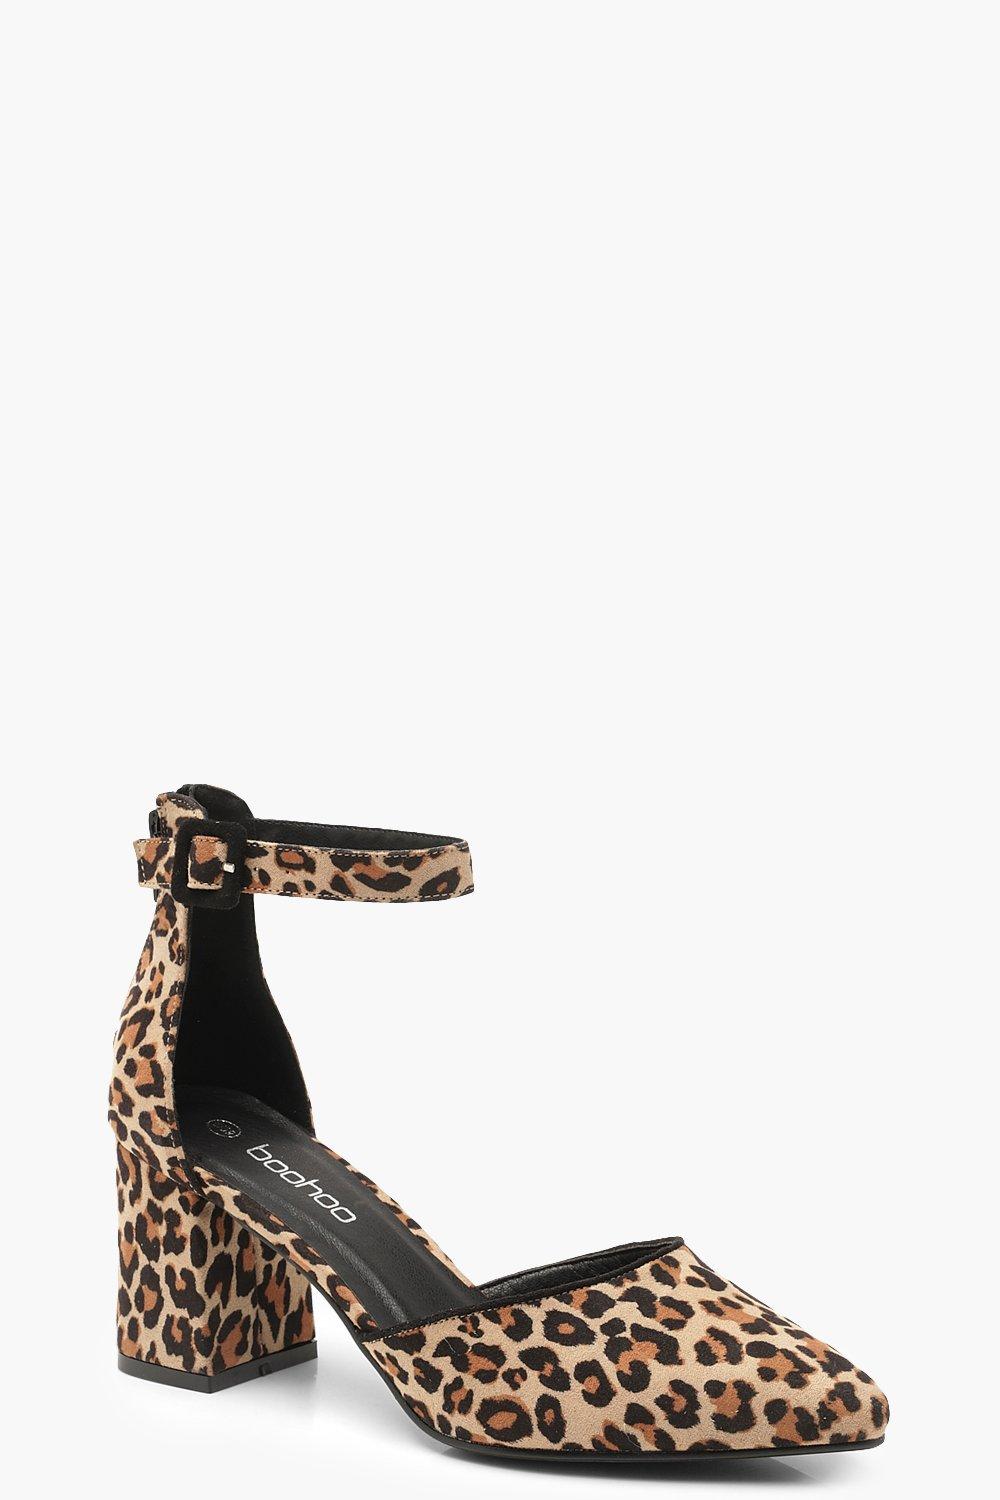 low heel leopard print shoes